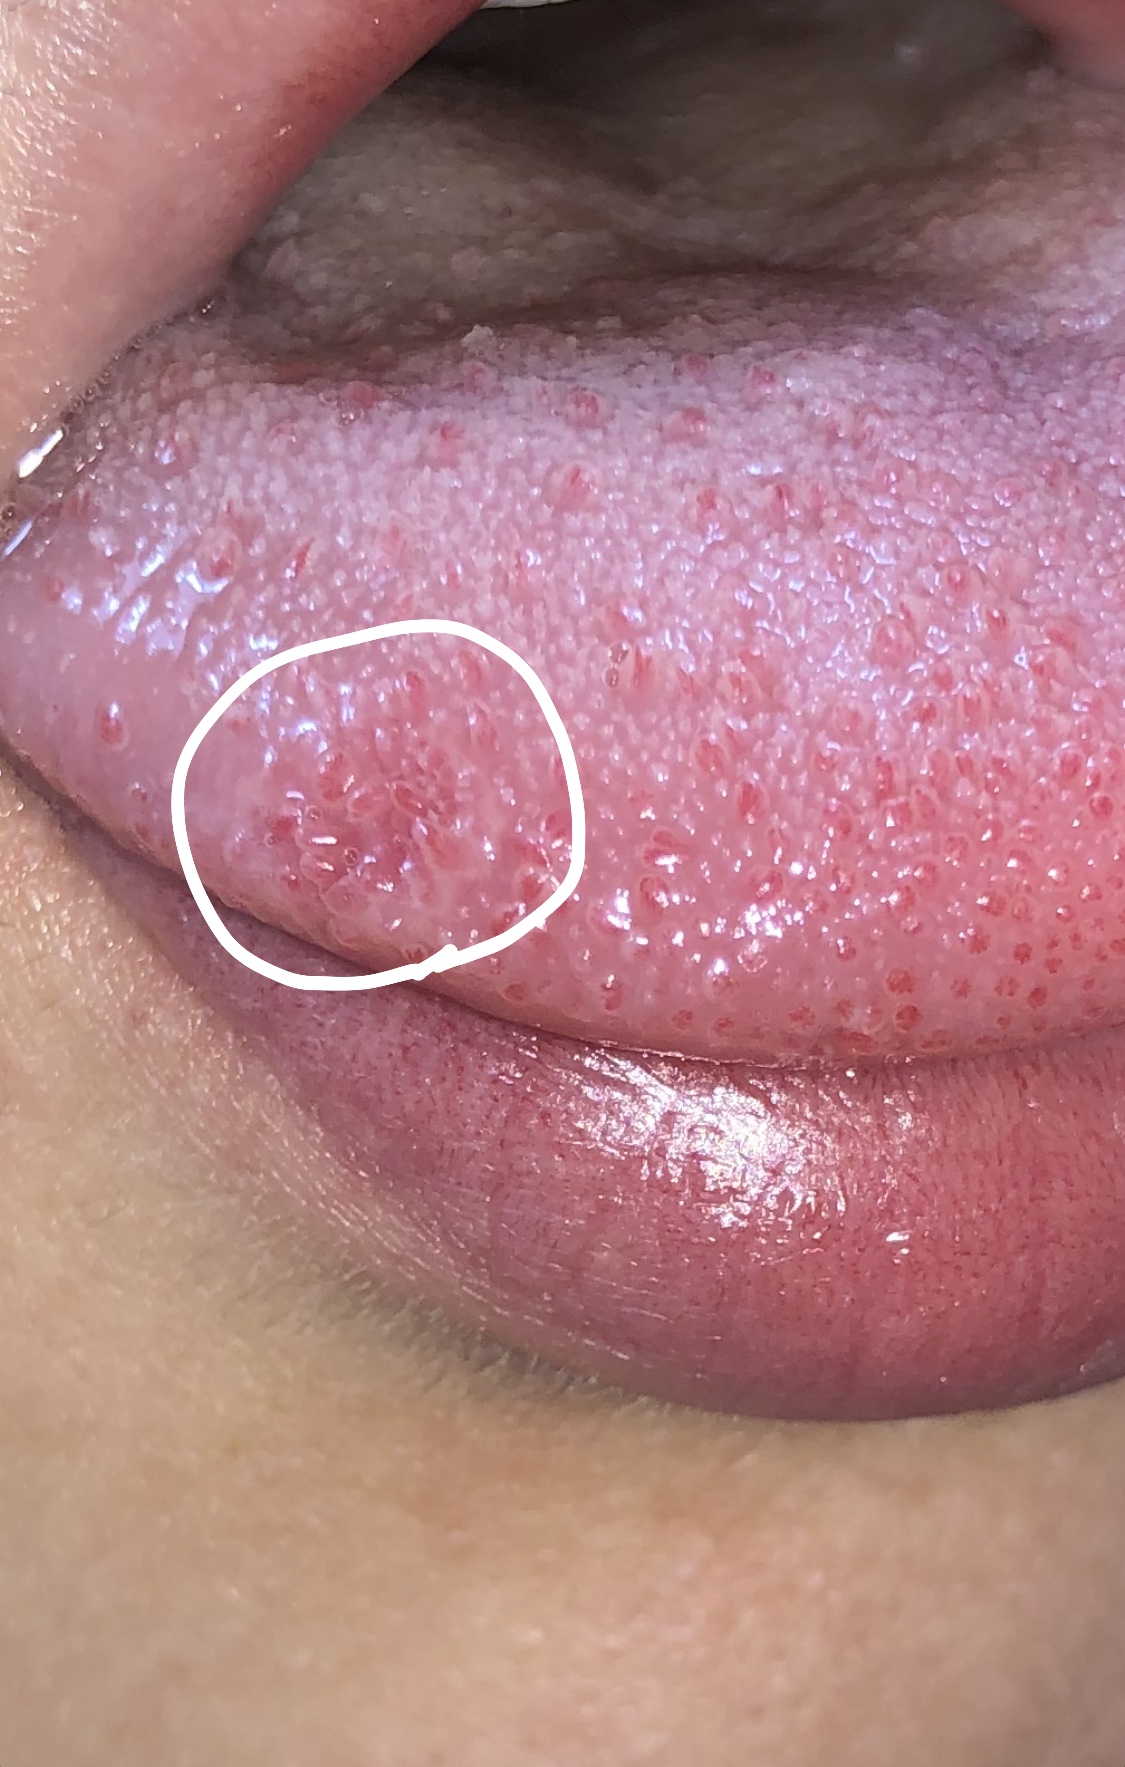 痛い 舌 舌の裏のひだが痛い時に考えられる原因と対策について解説